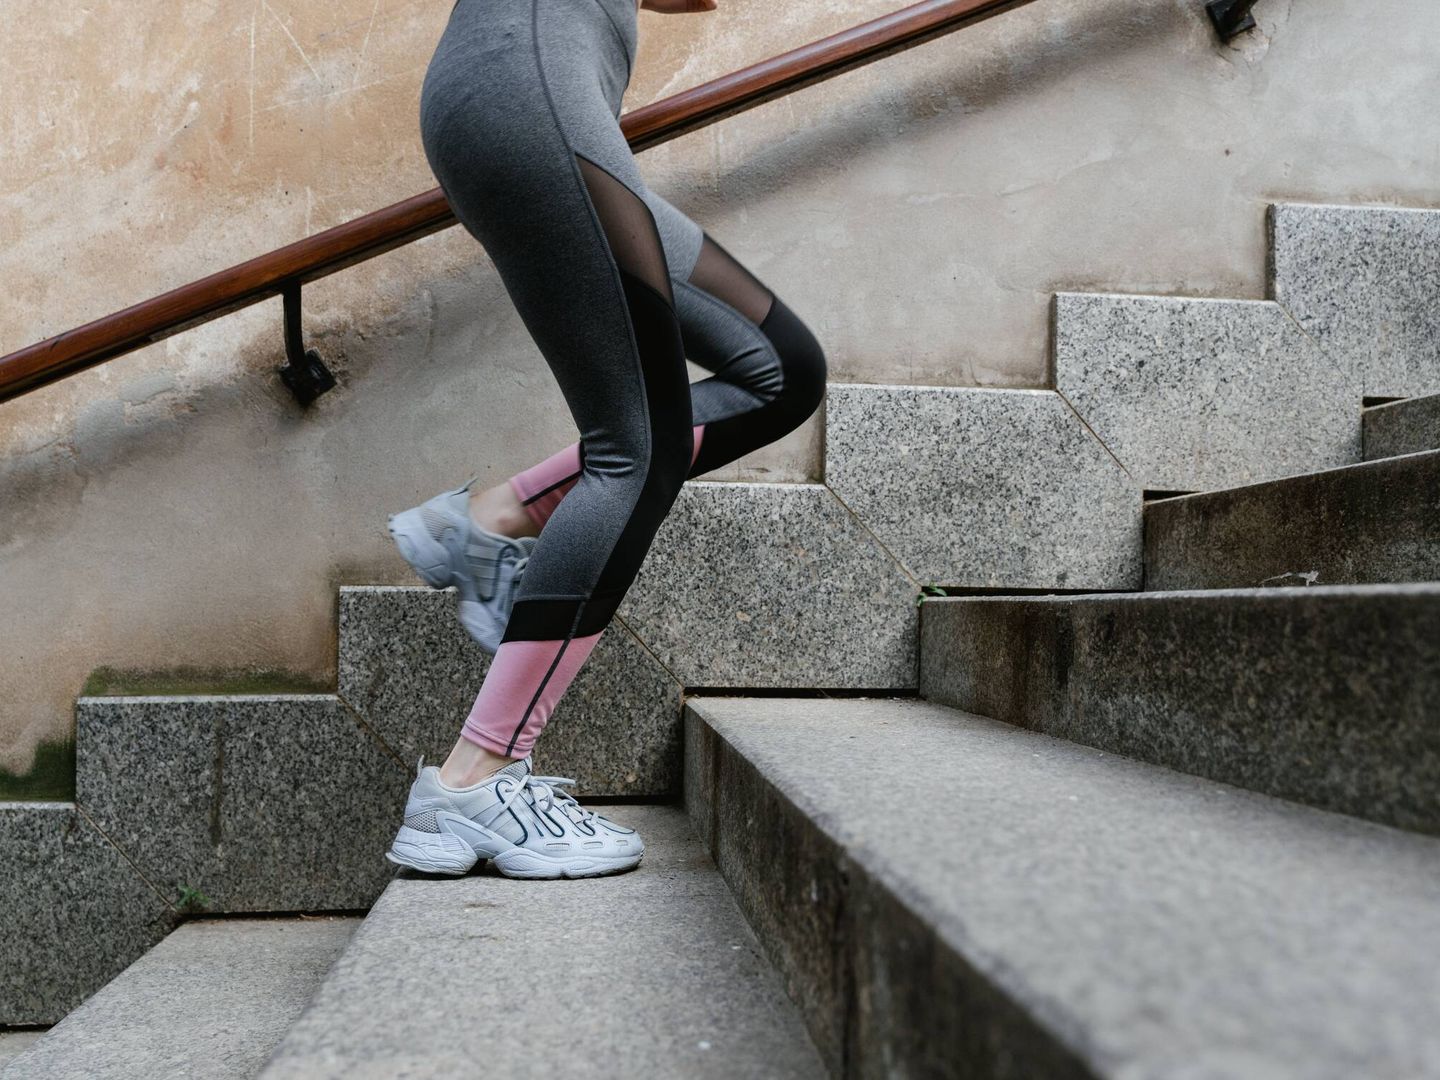 Subir solo cinco tramos de escaleras al día reduce el riesgo de sufrir ataques cardiacos y accidentes cerebrovasculares.  (Pexels)